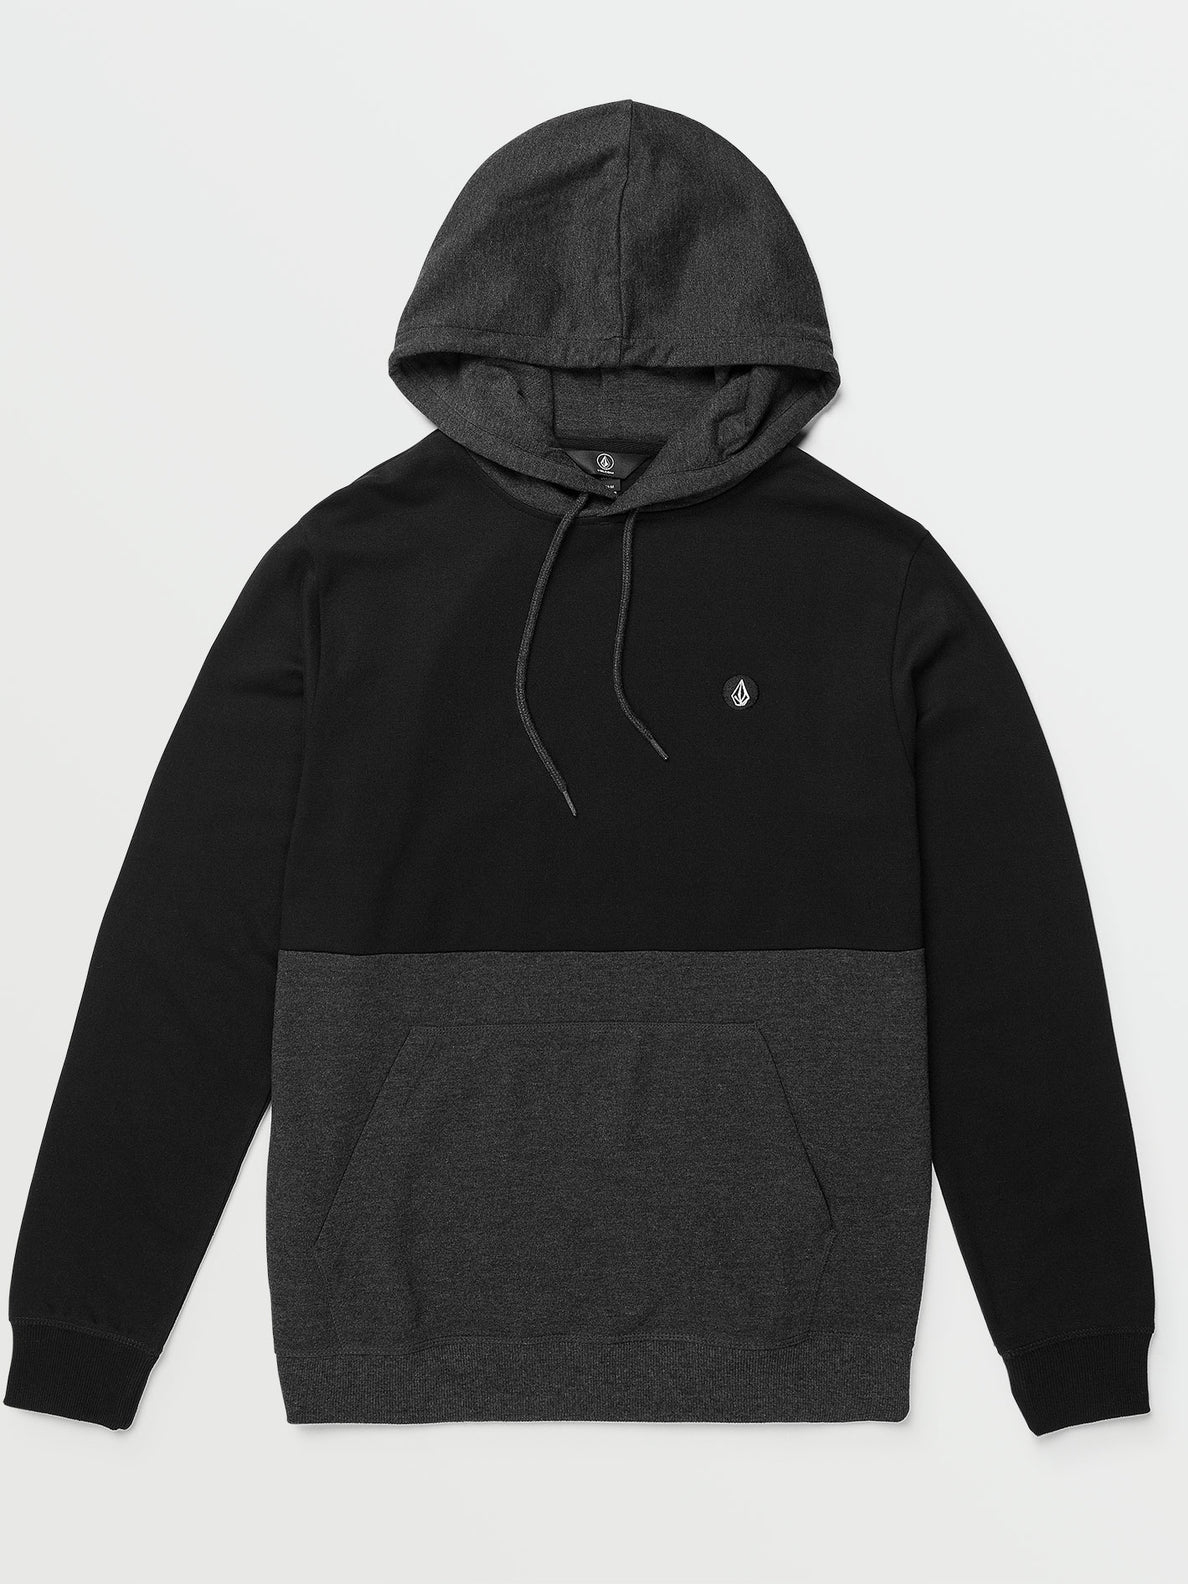 Contrast Pullover Fleece Sweatshirt - Black